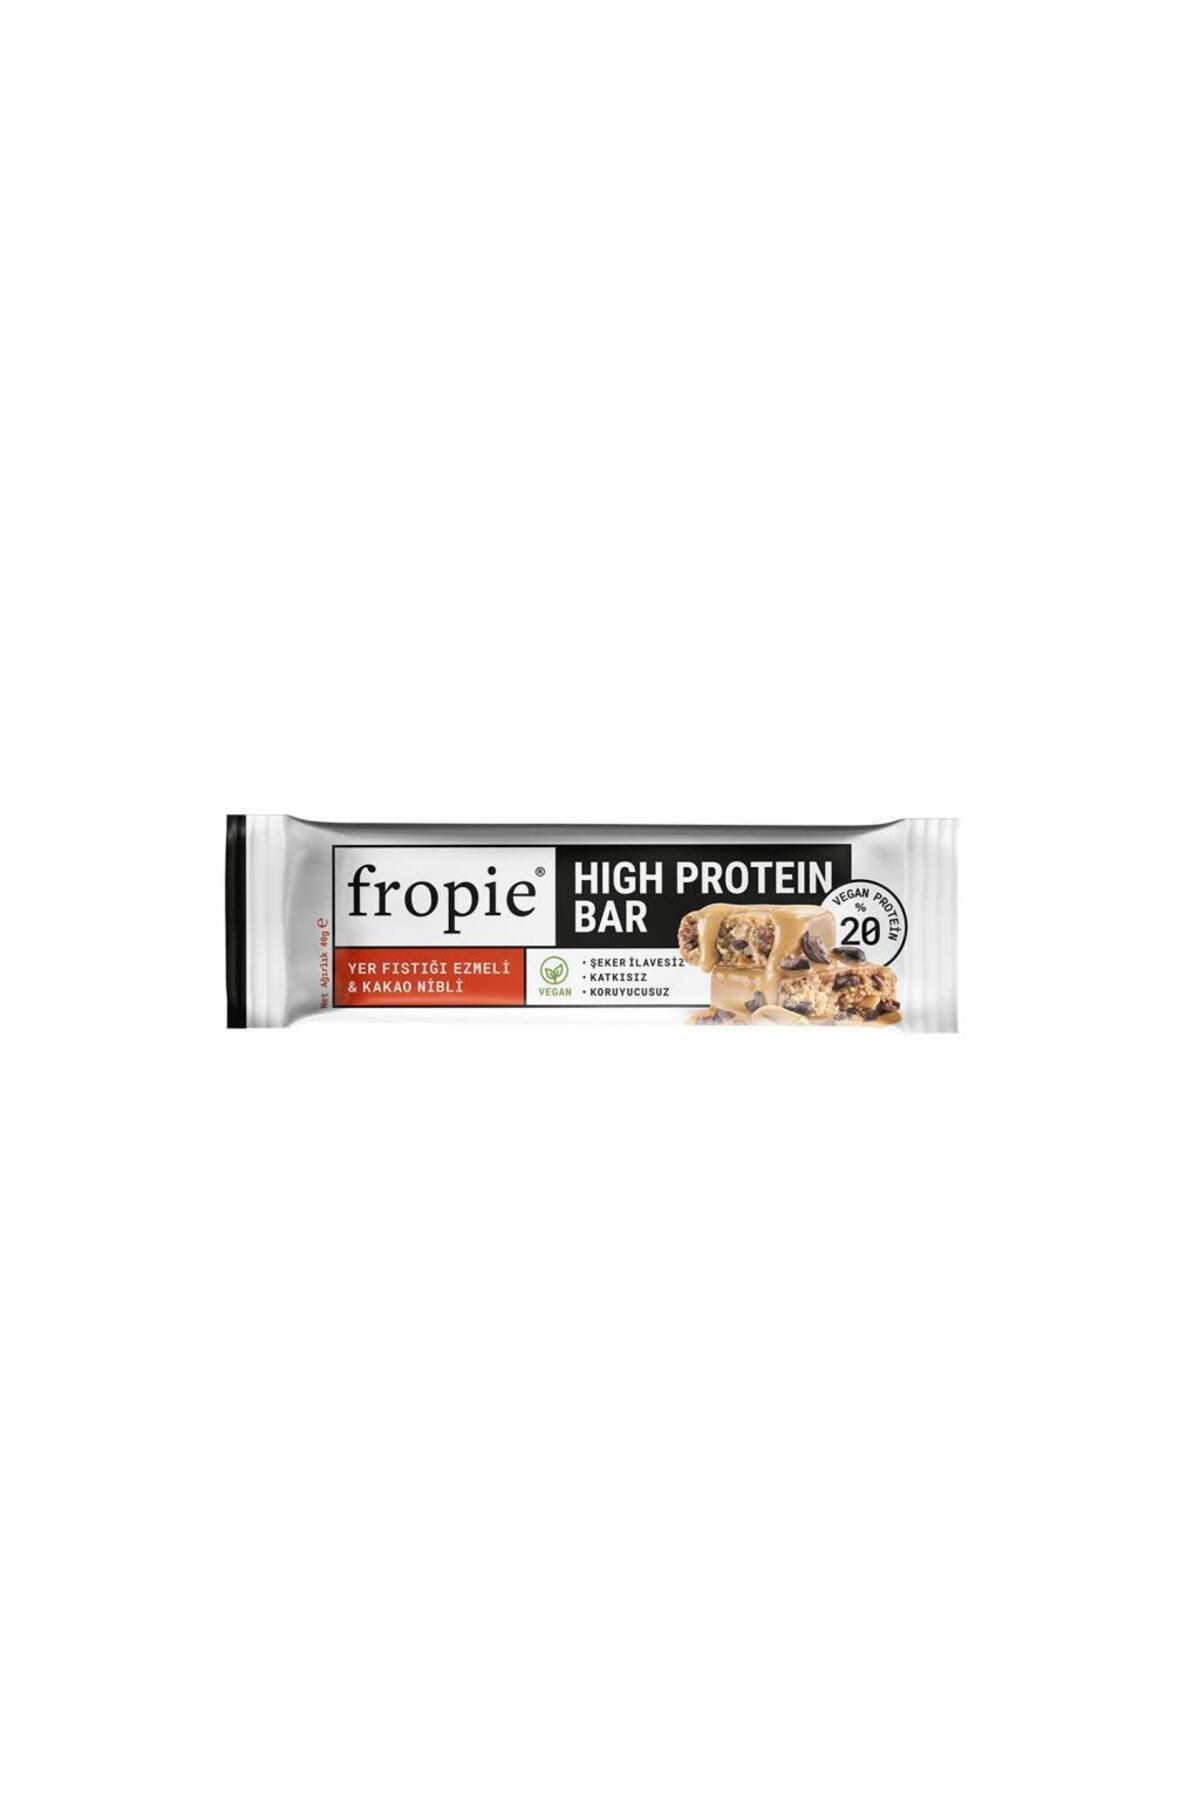 FROPİE Fropie Glutensiz Yer Fıstıklı&kakao Nibli Protein Bar 40 gr